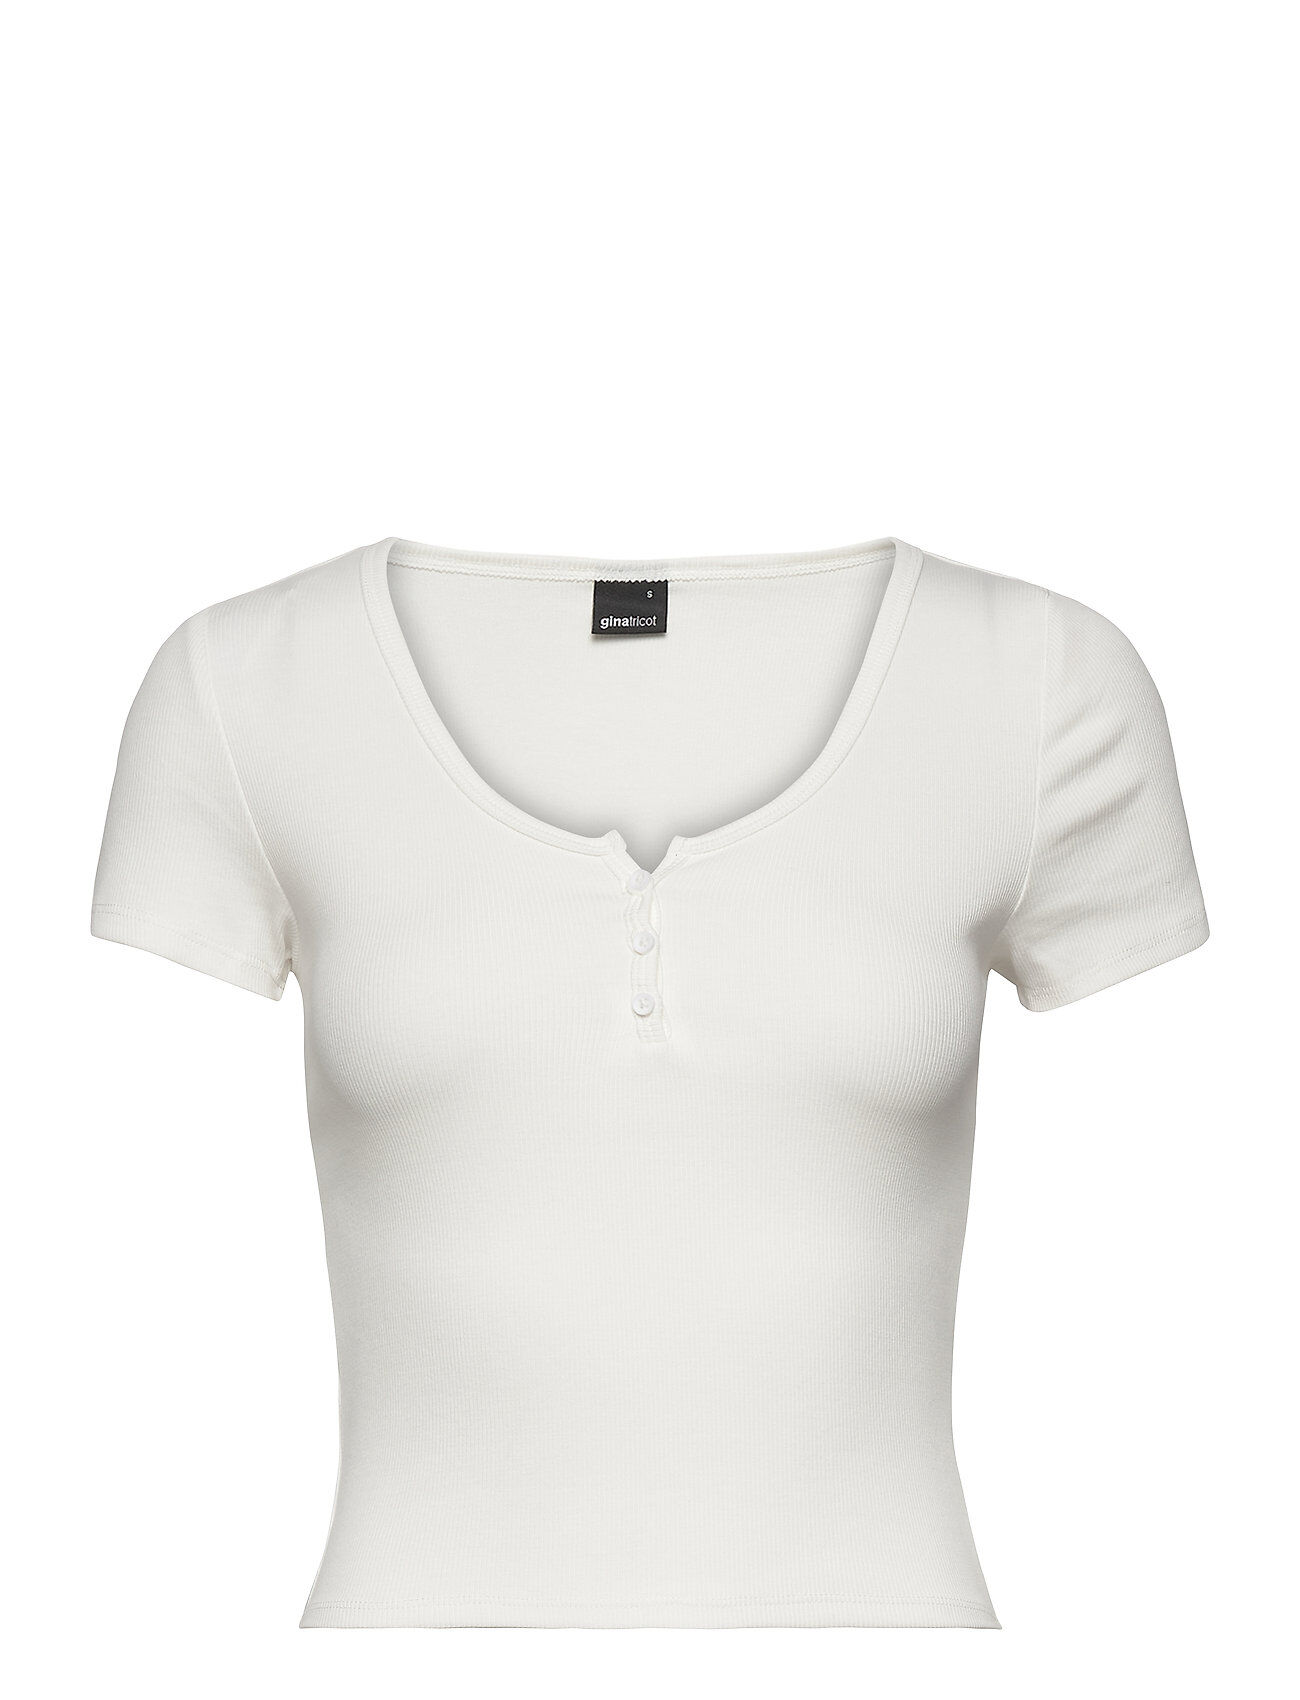 Gina Tricot Mimmi Top T-shirts & Tops Short-sleeved Hvit Gina Tricot